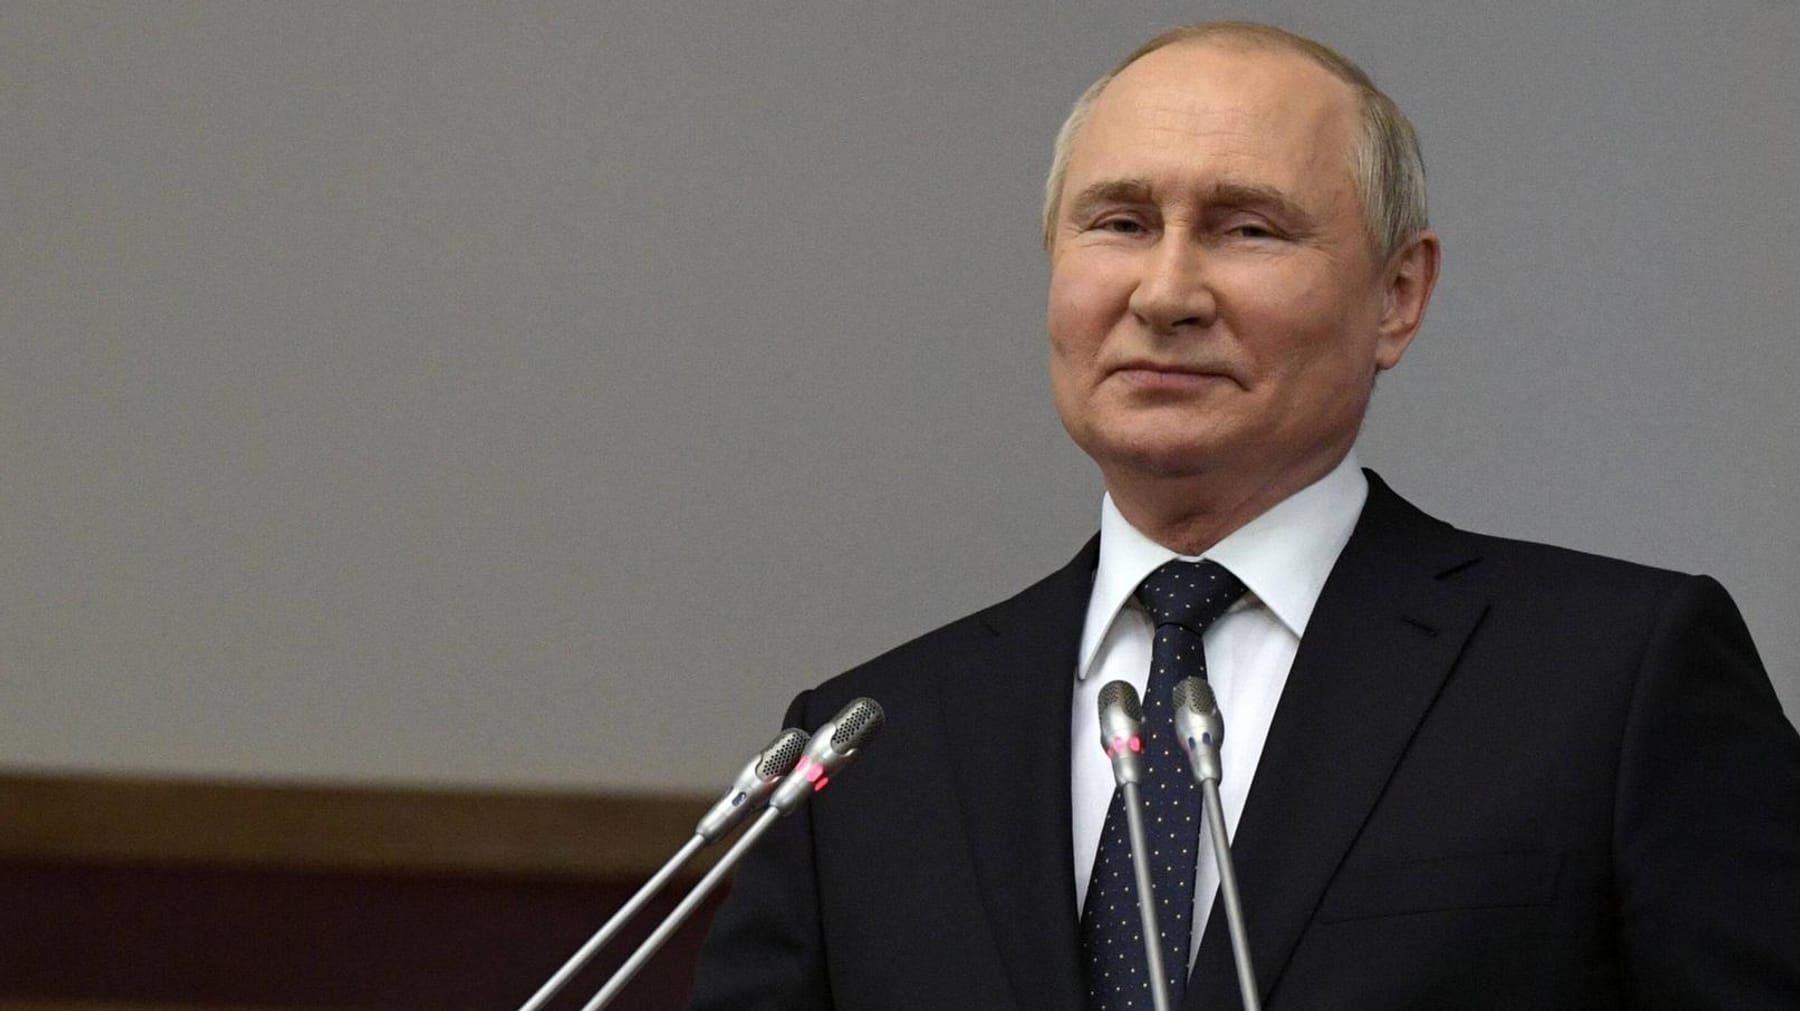 "Wir können Putin nicht nur den Mittelfinger zeigen"